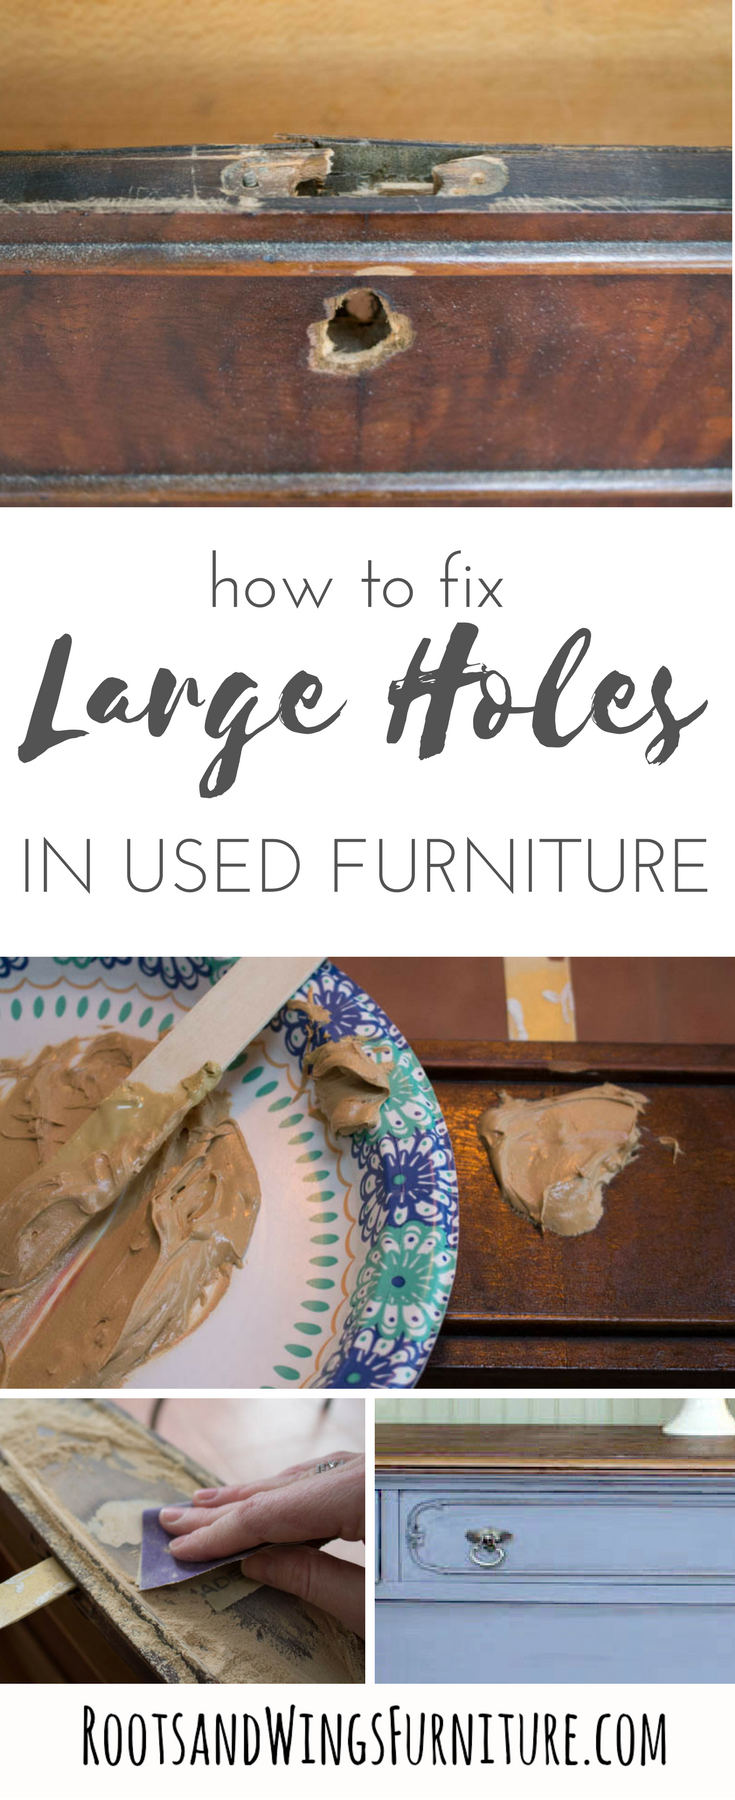 furniture+repair+filling+large+holes+pin